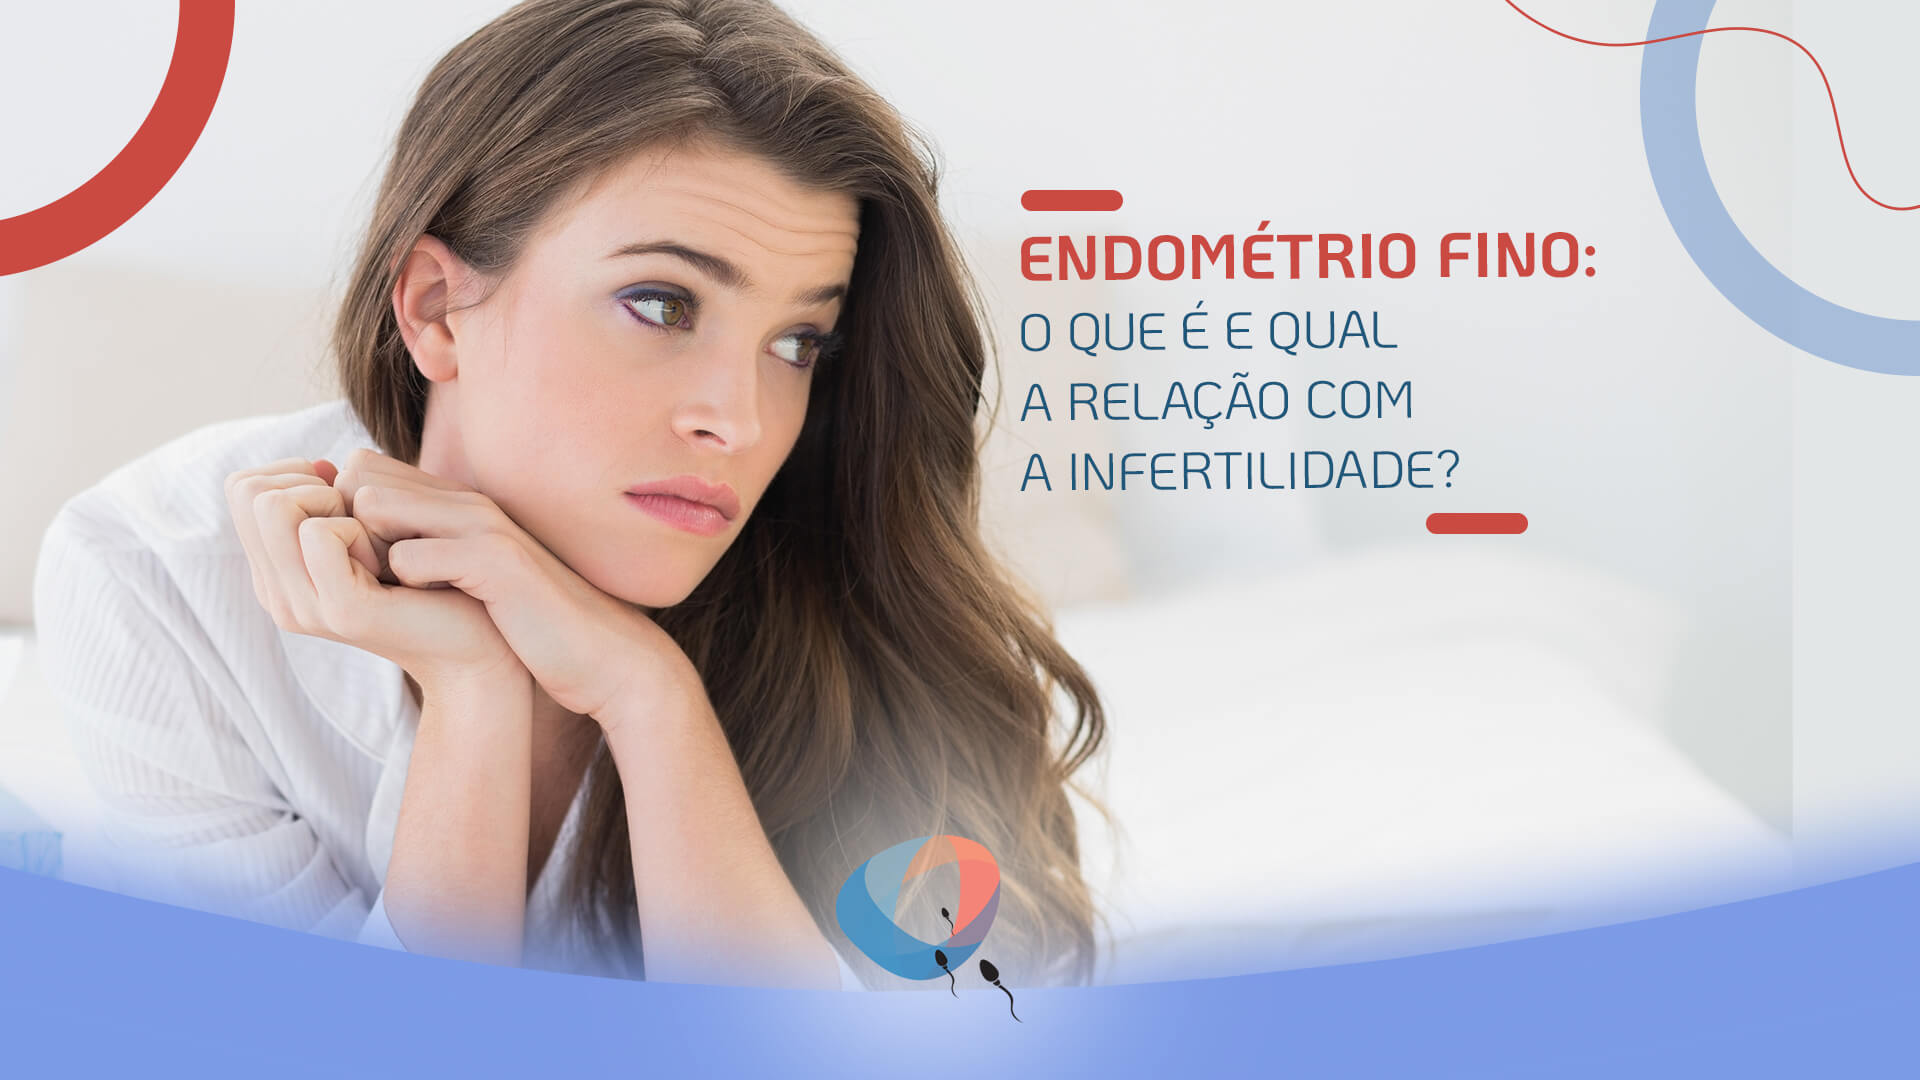 O que é receptividade endometrial e qual sua relação com a fertilidade?, Dr. Augusto Bussab